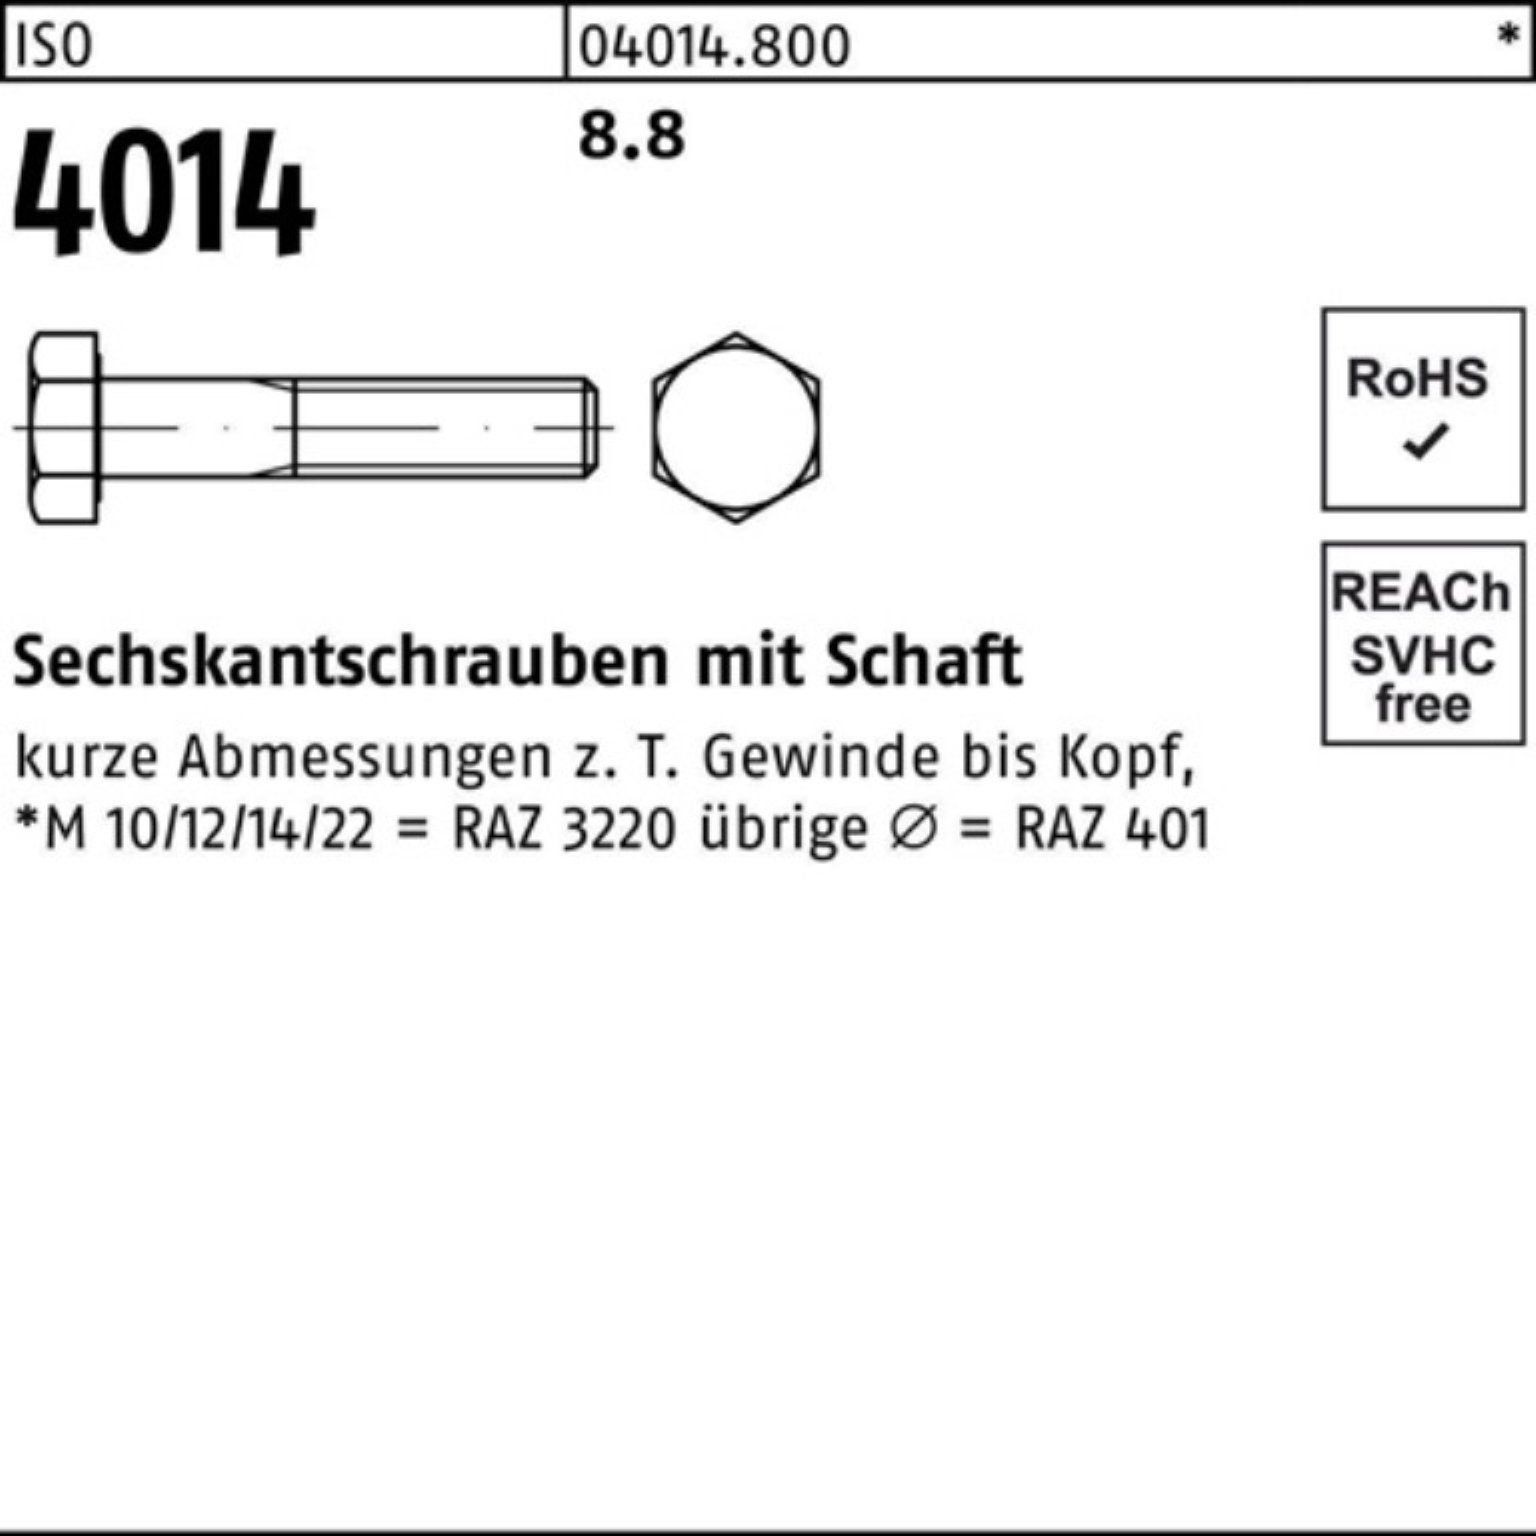 Bufab Sechskantschraube Pack 4014 M33x 210 ISO ISO Stück 8.8 Schaft 1 100er Sechskantschraube